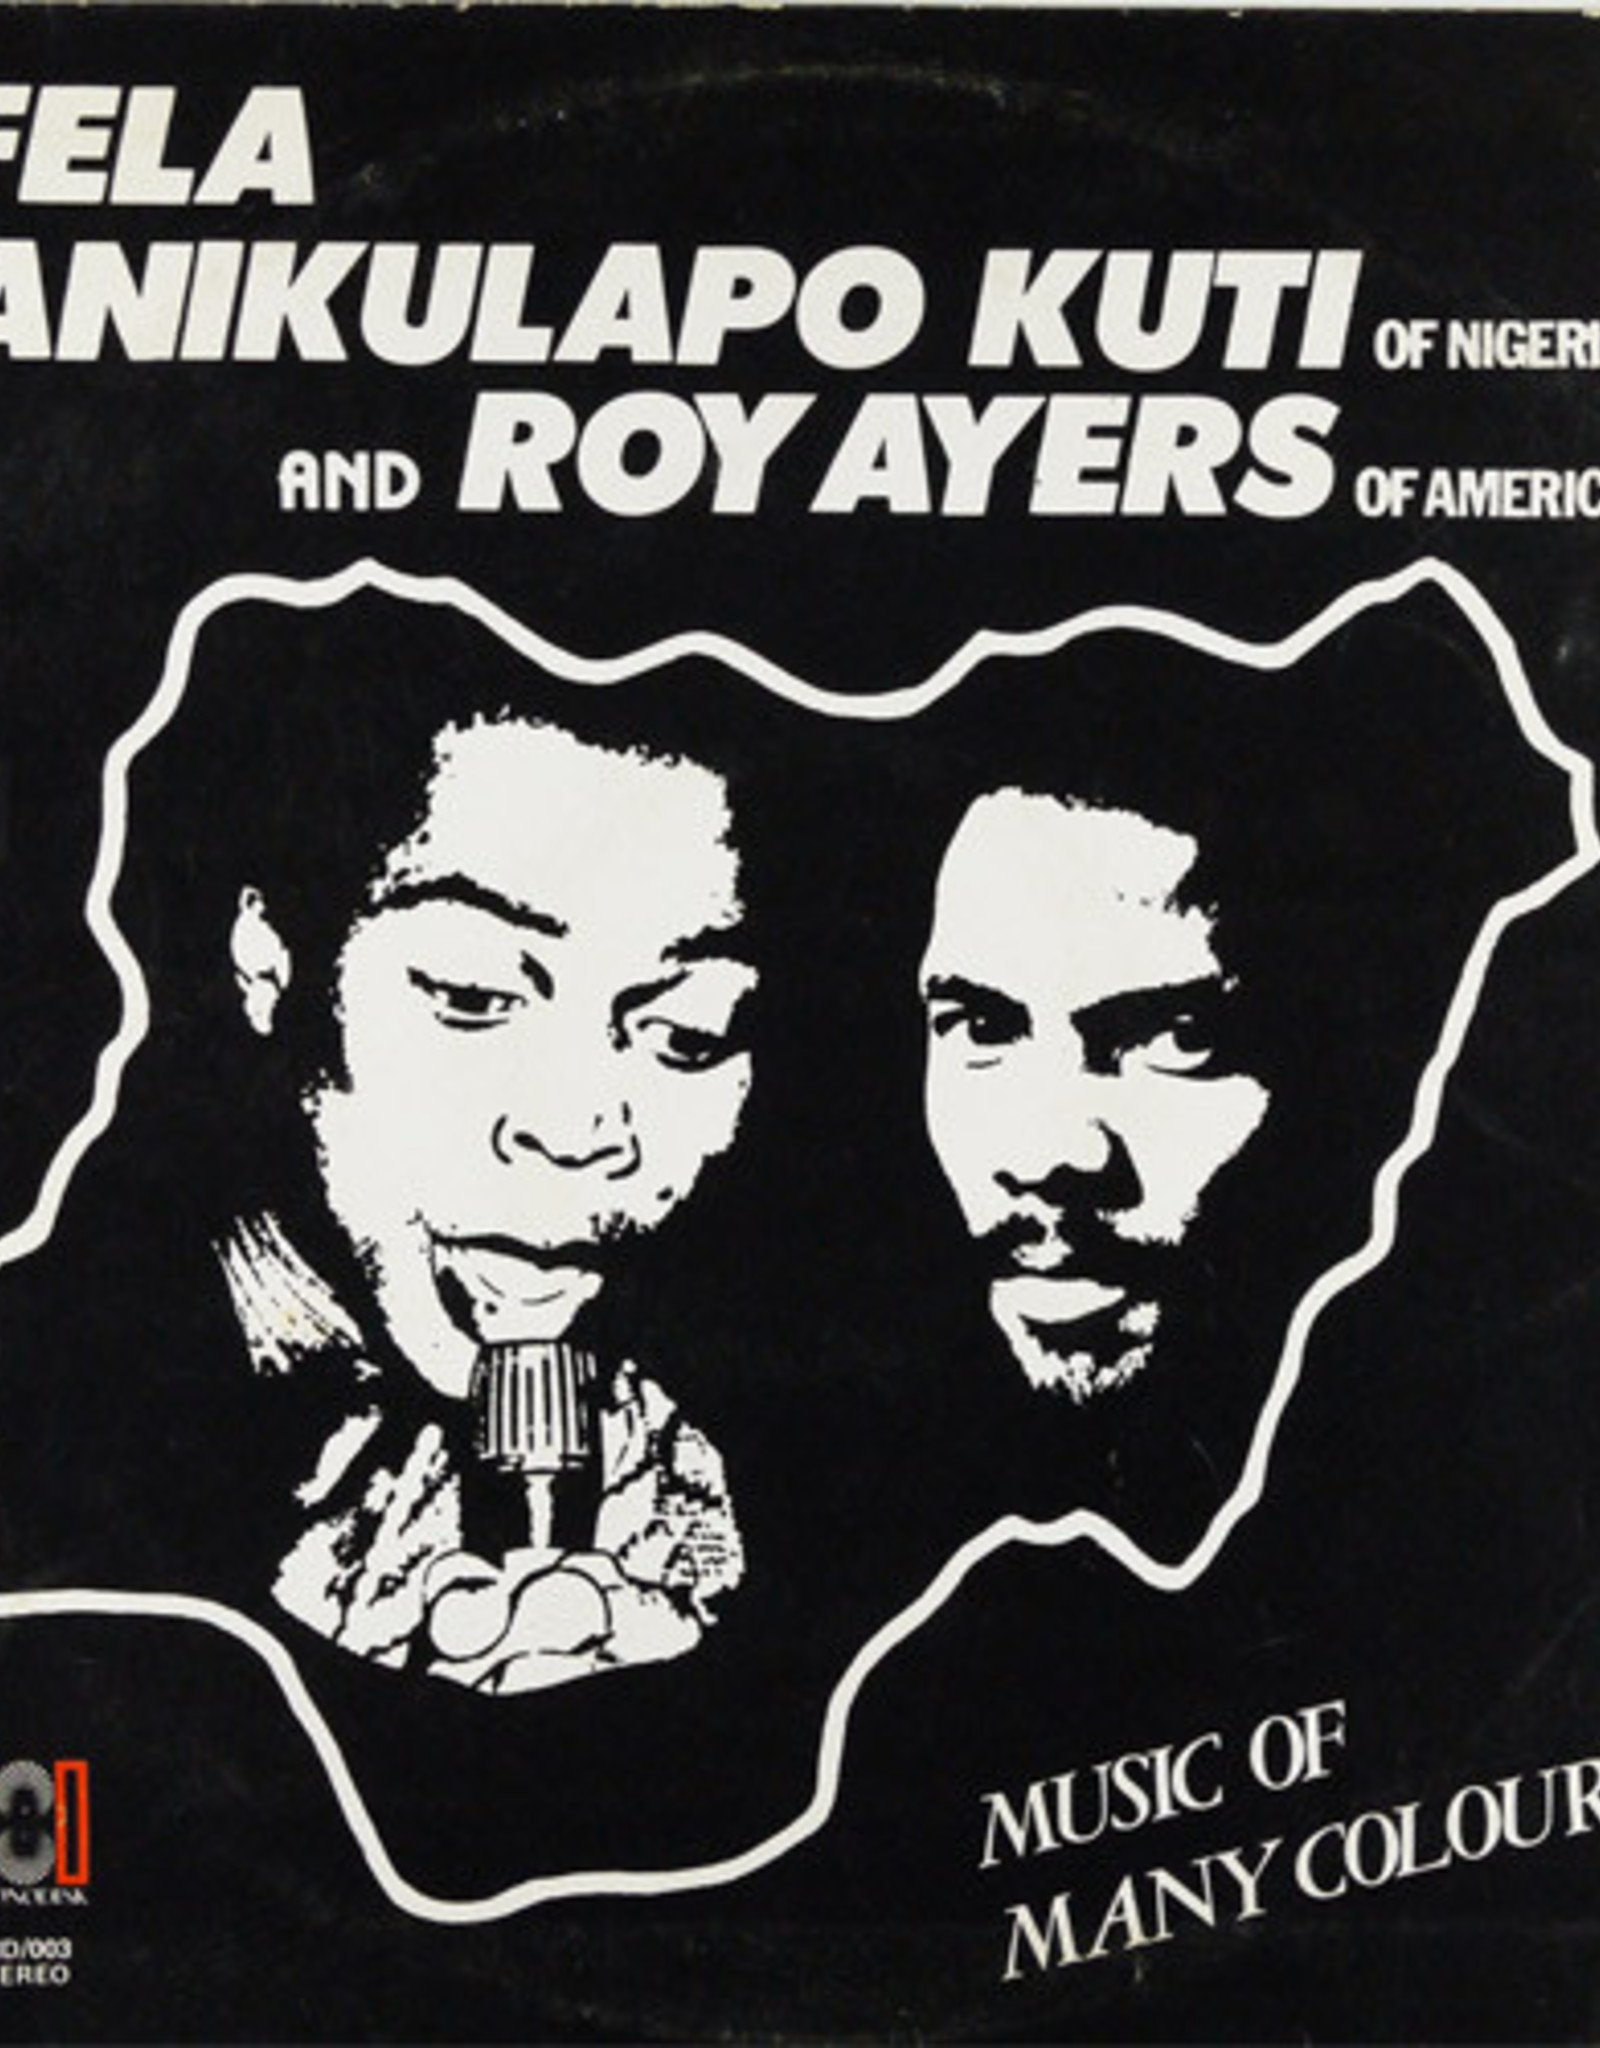 Fela Kuti & Roy Ayers - Music Of Many Colours